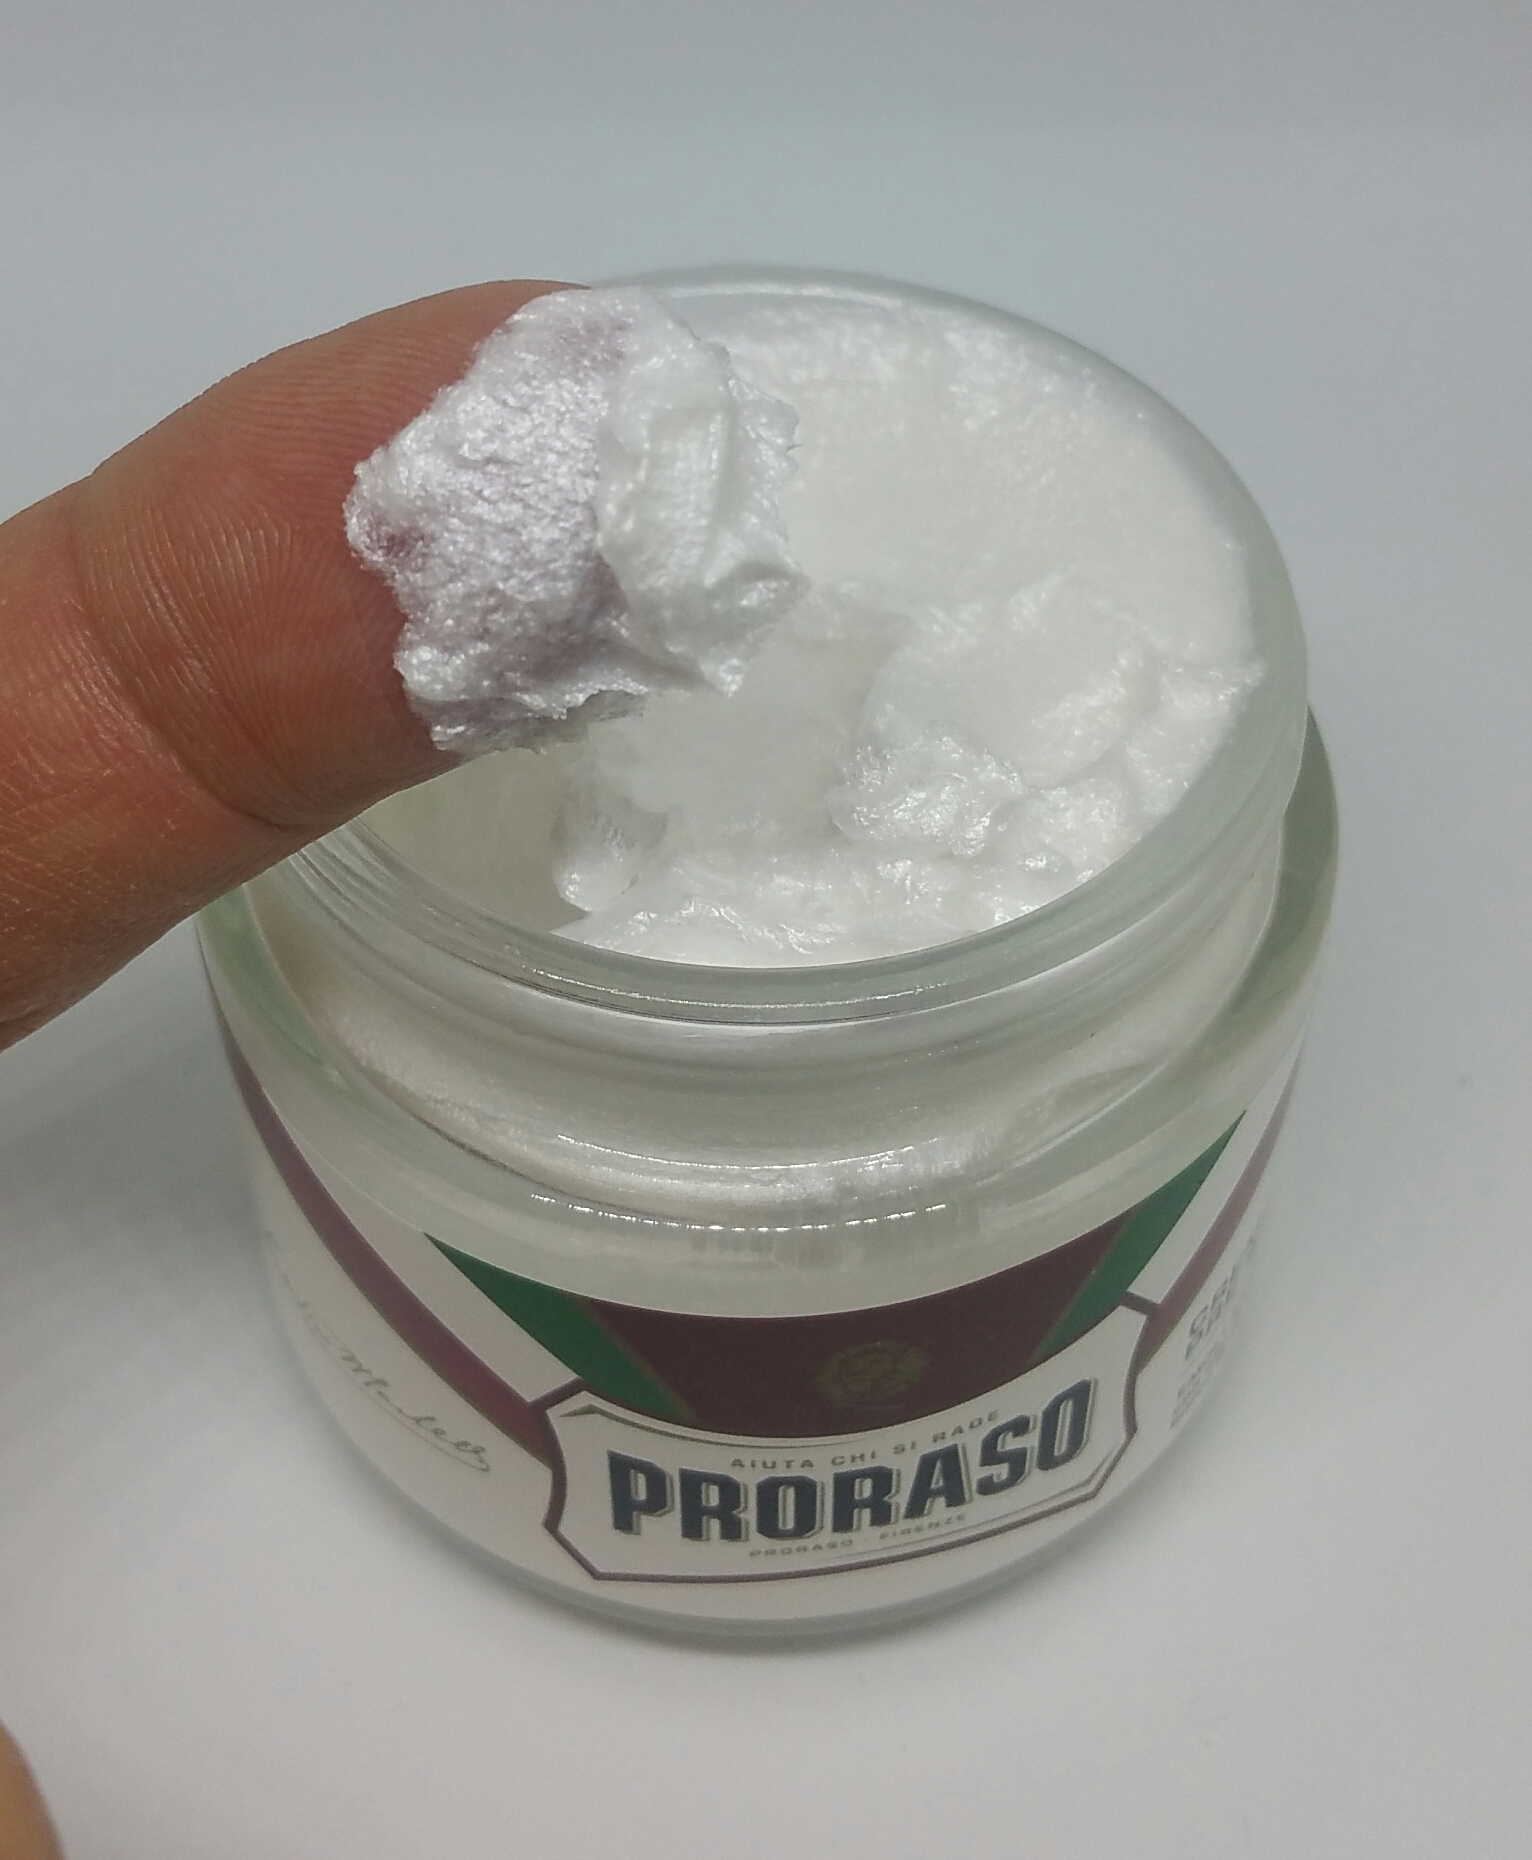 Proraso Red Pre-shave cream